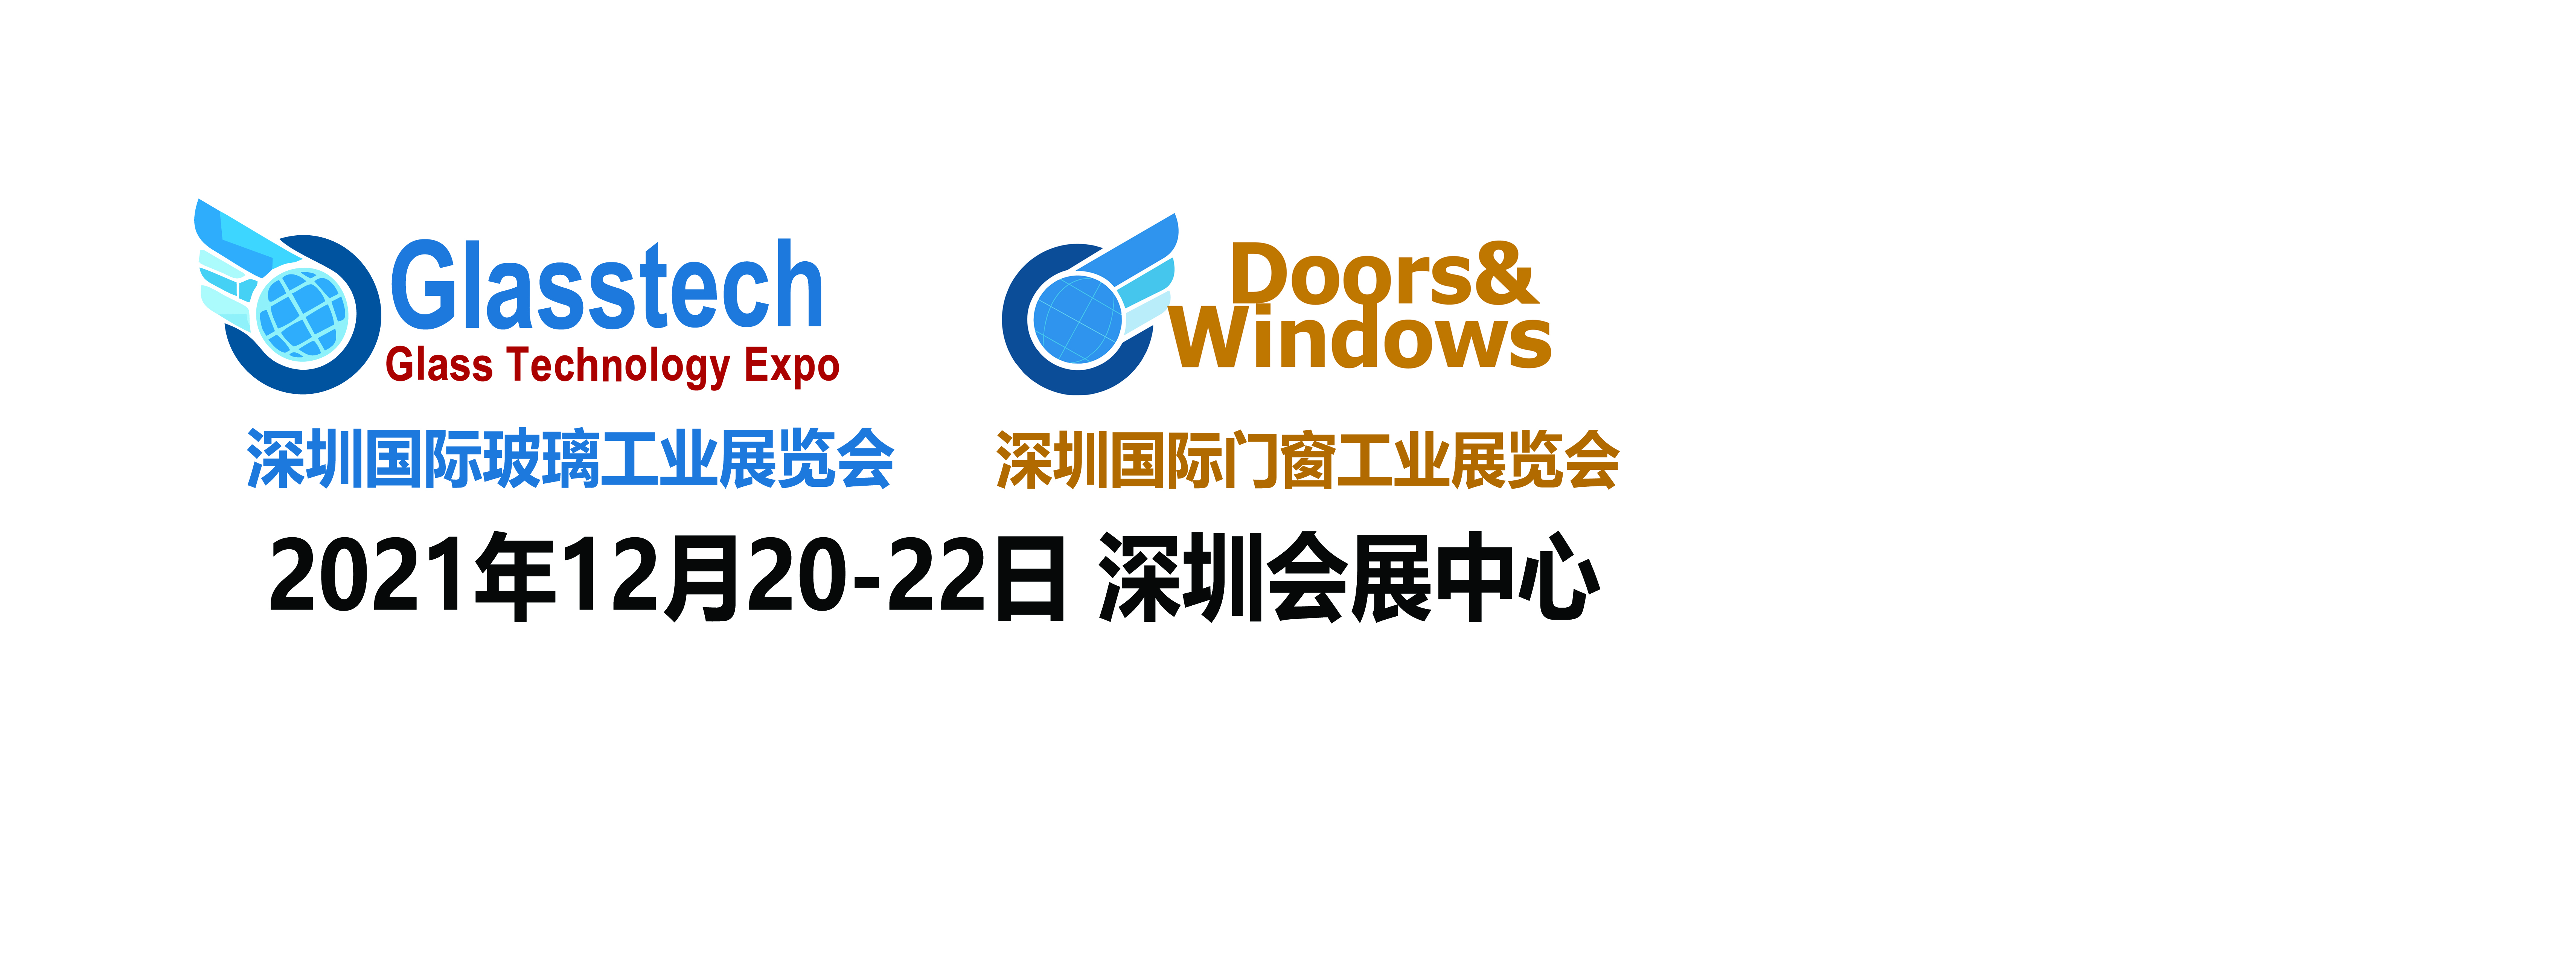 12月深圳国际玻璃工业展览会 Glasstech CHINA 2021